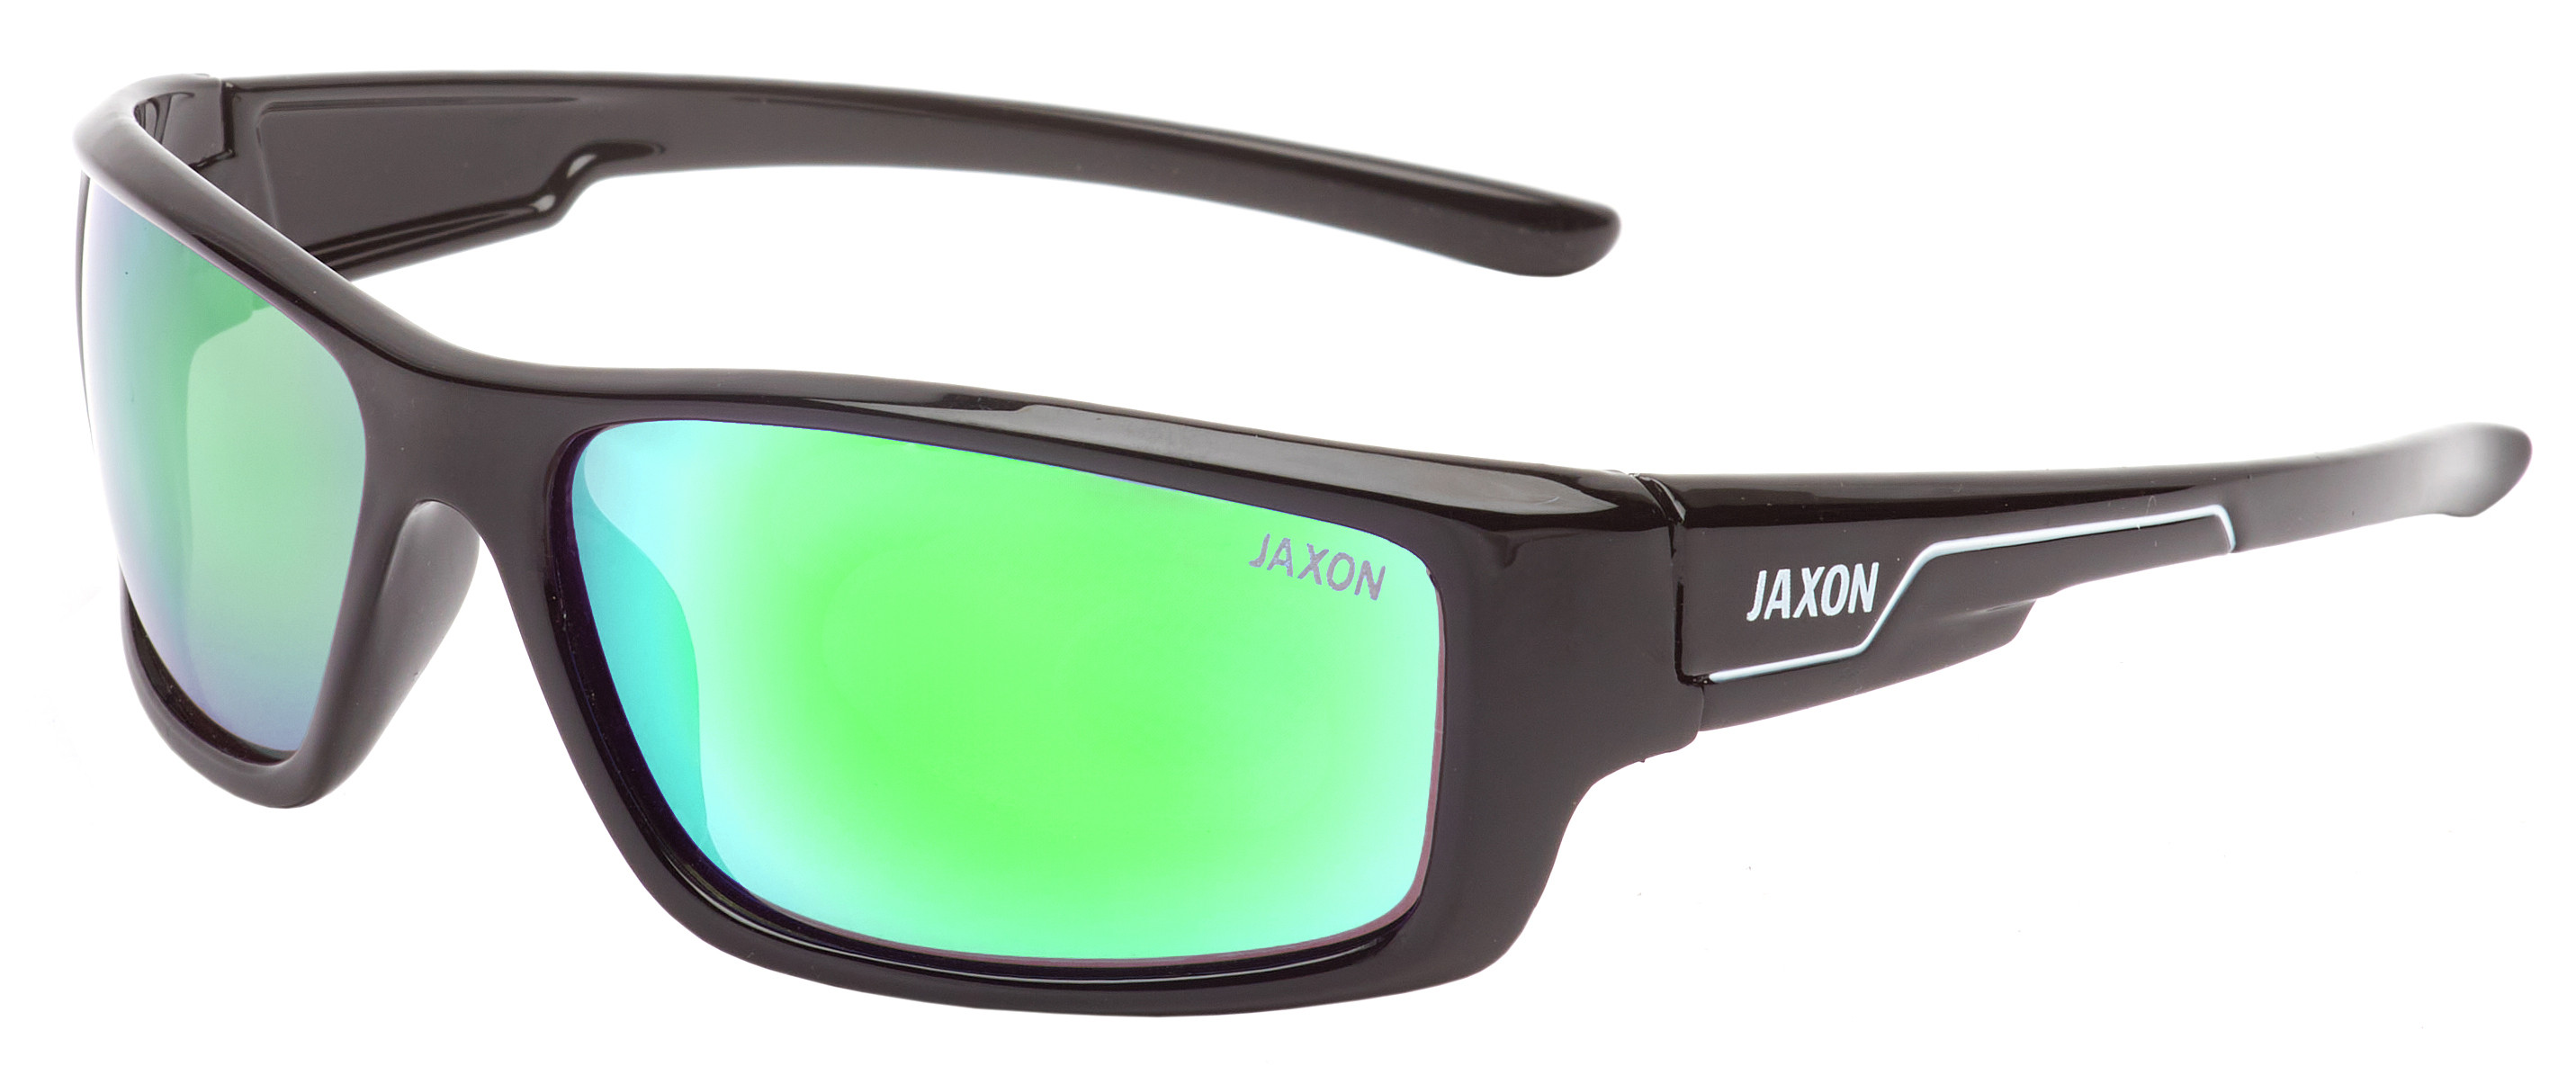 Очки поляризационные Jaxon X54SMZ зеркально зеленые